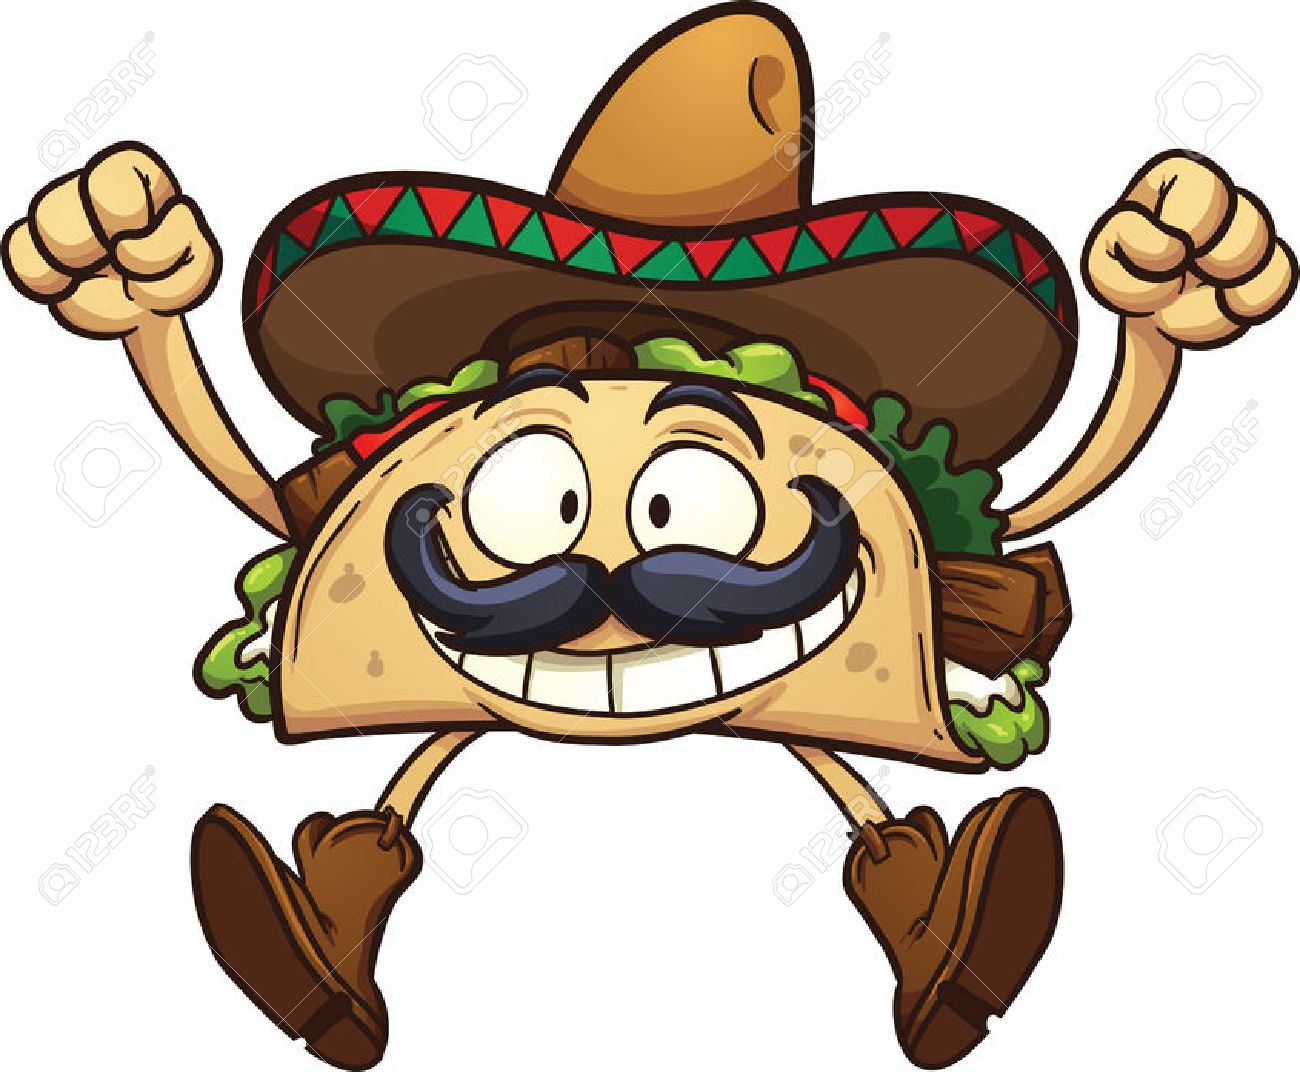 Mexican sombrero clipart 4